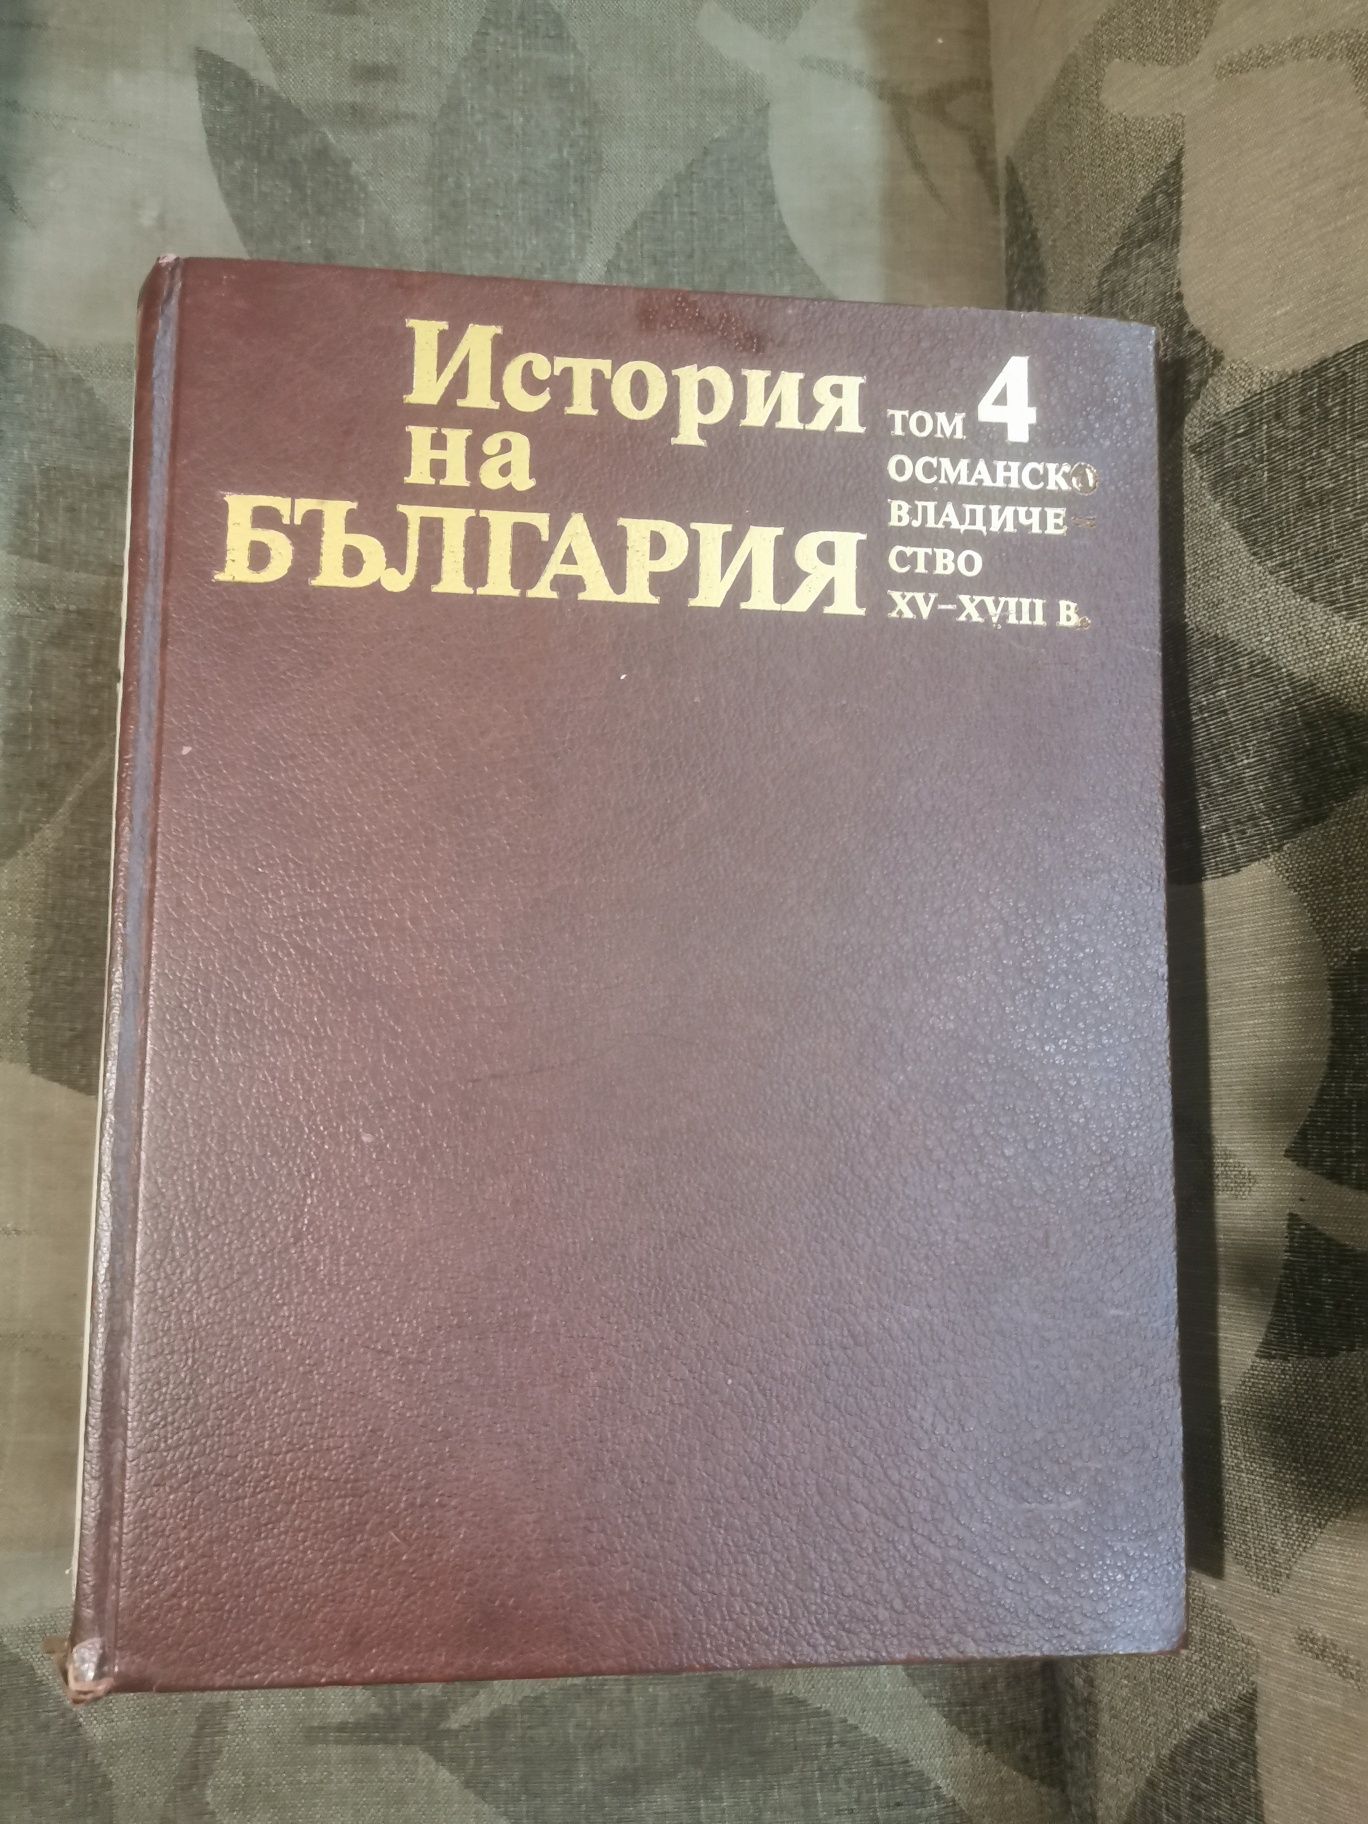 Томове История на България на БАН - томове 1-7